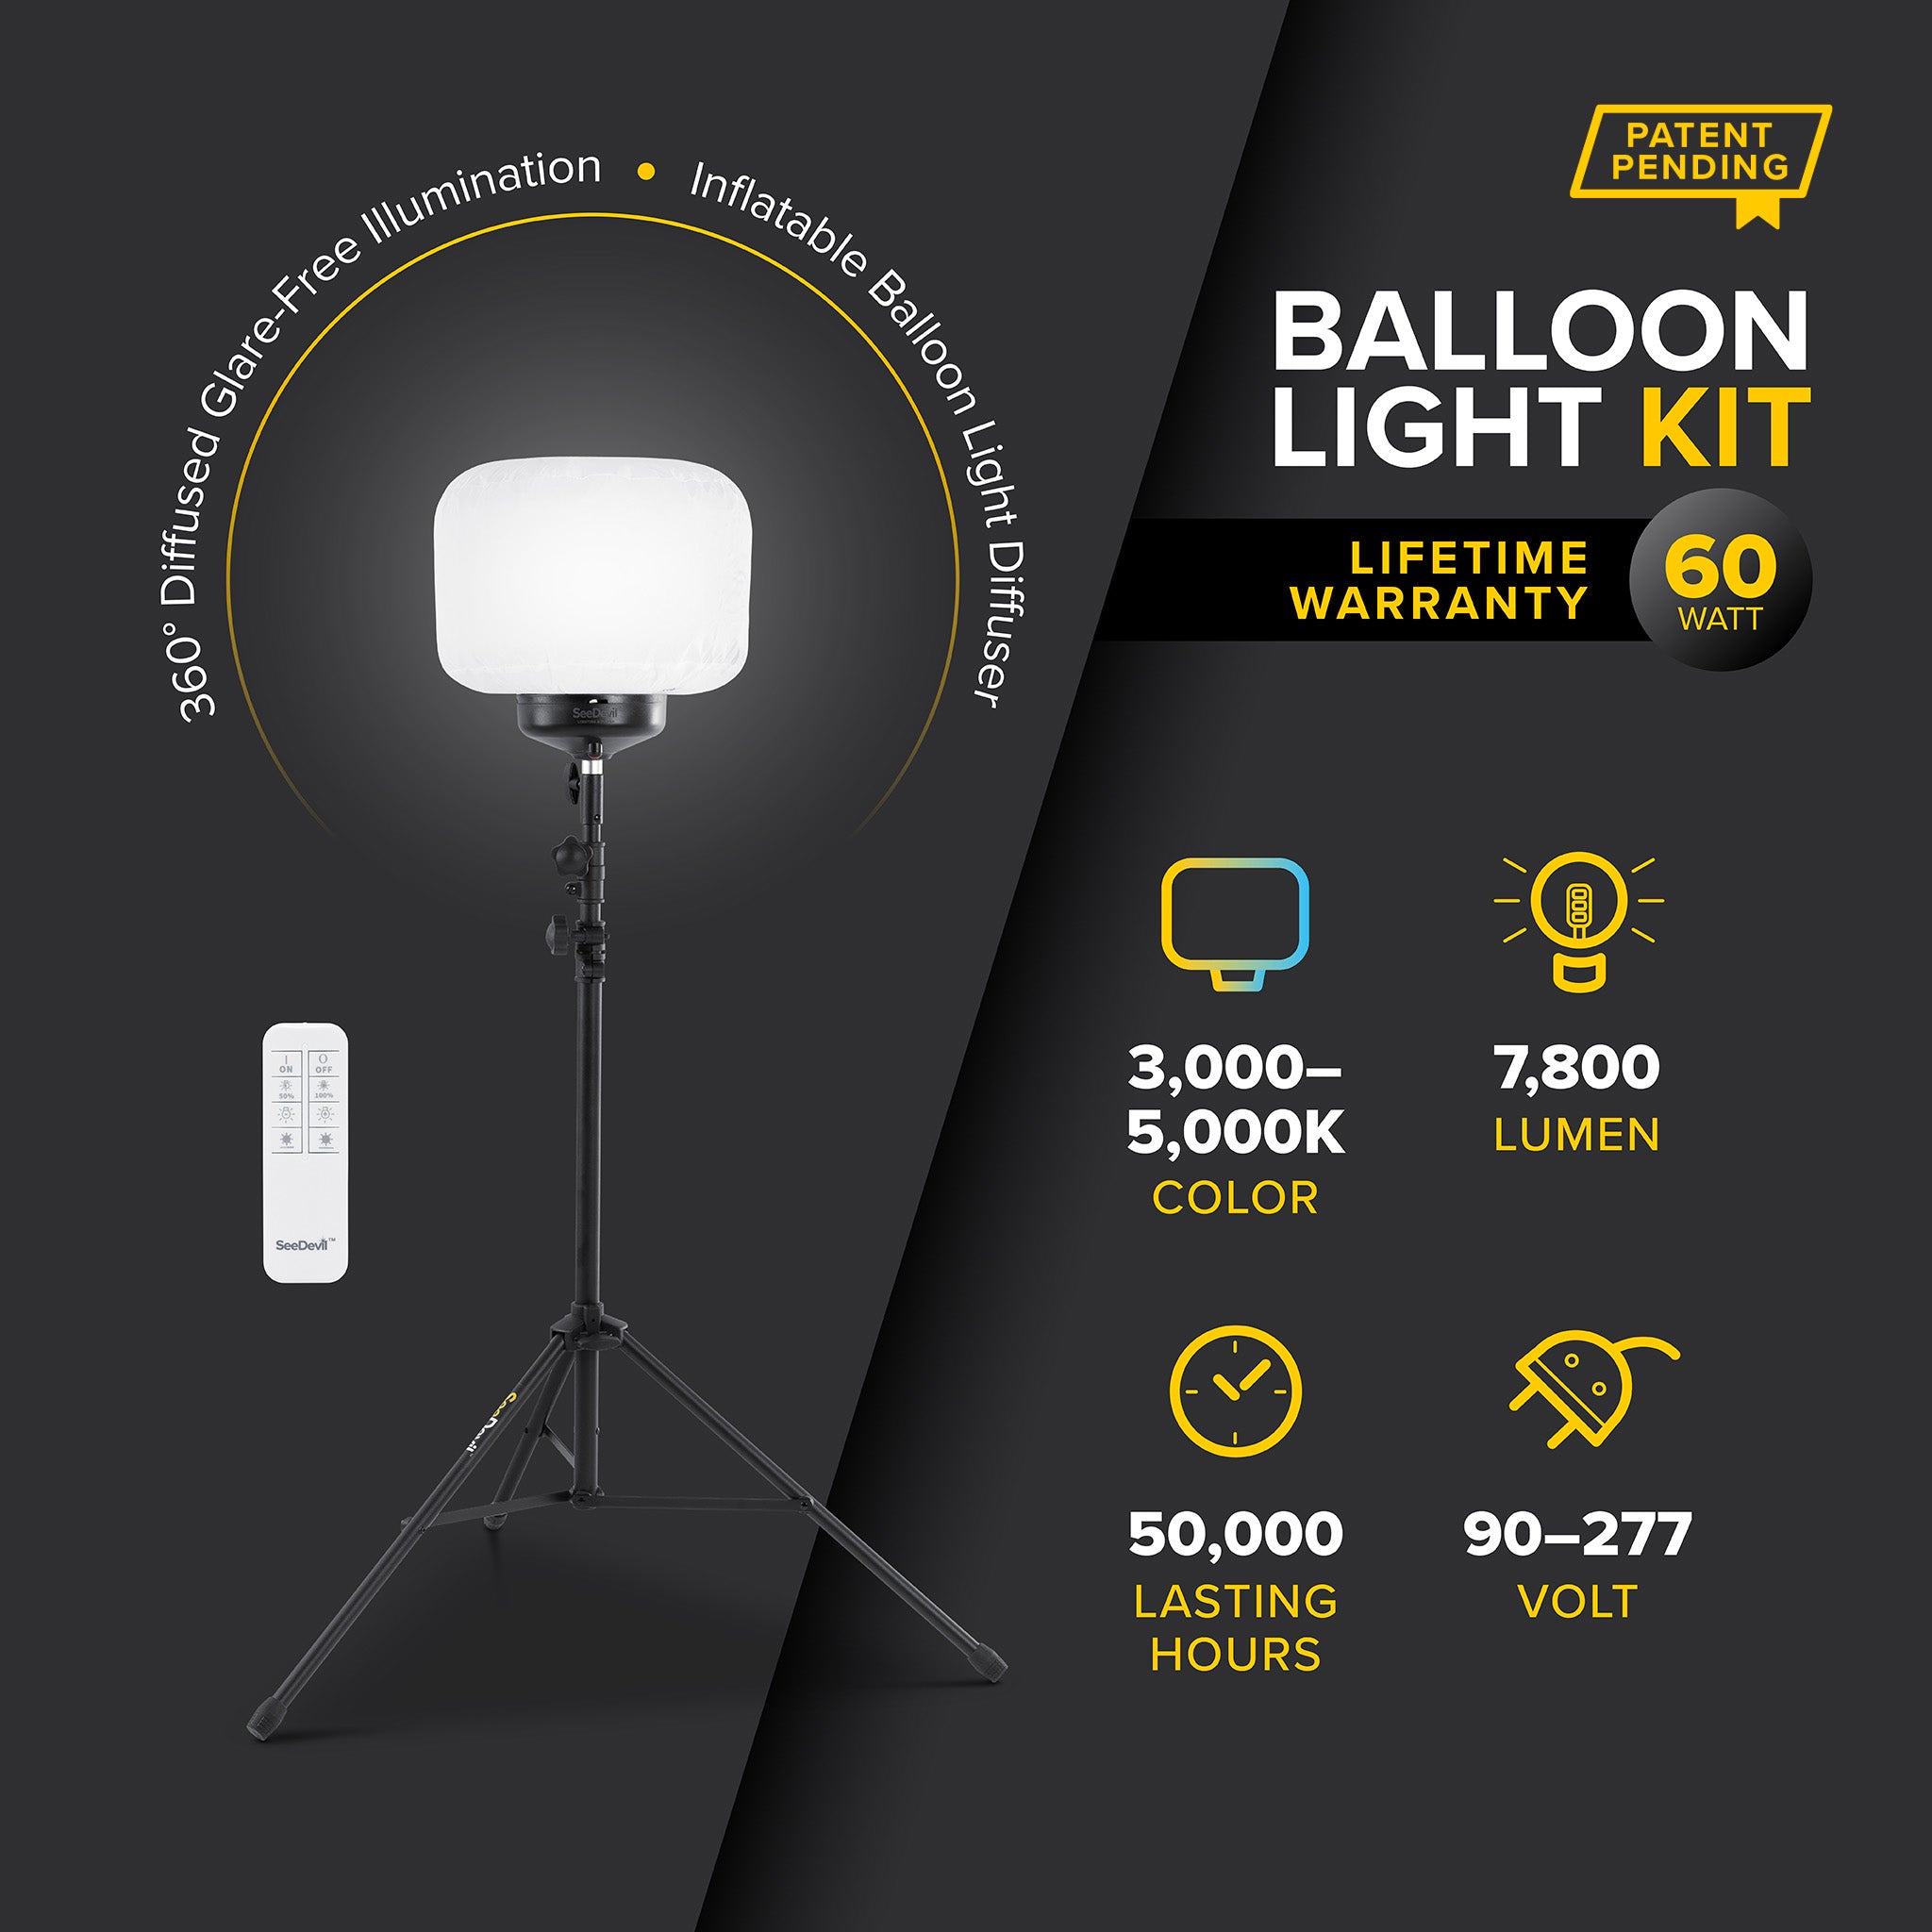 G3 60 Watt Balloon Light Kit